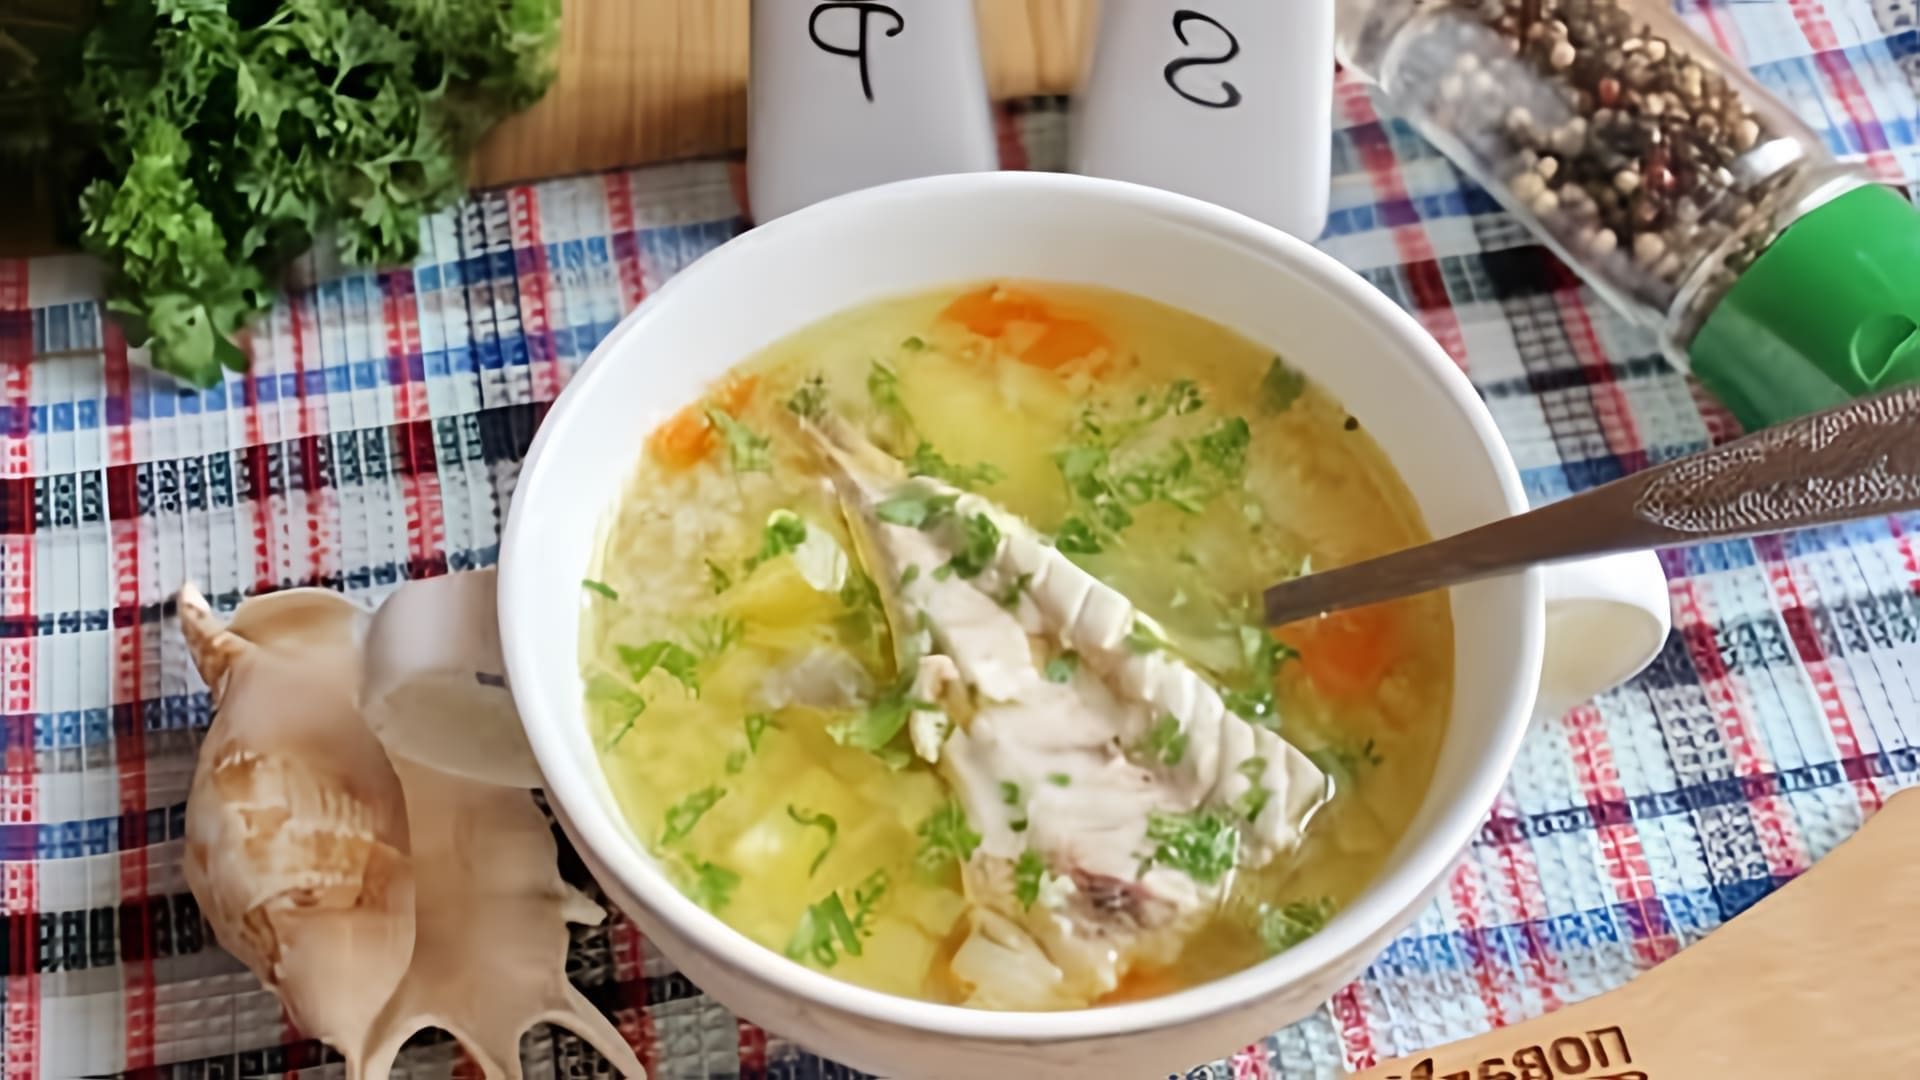 В этом видео демонстрируется процесс приготовления супа из скумбрии с пшеном